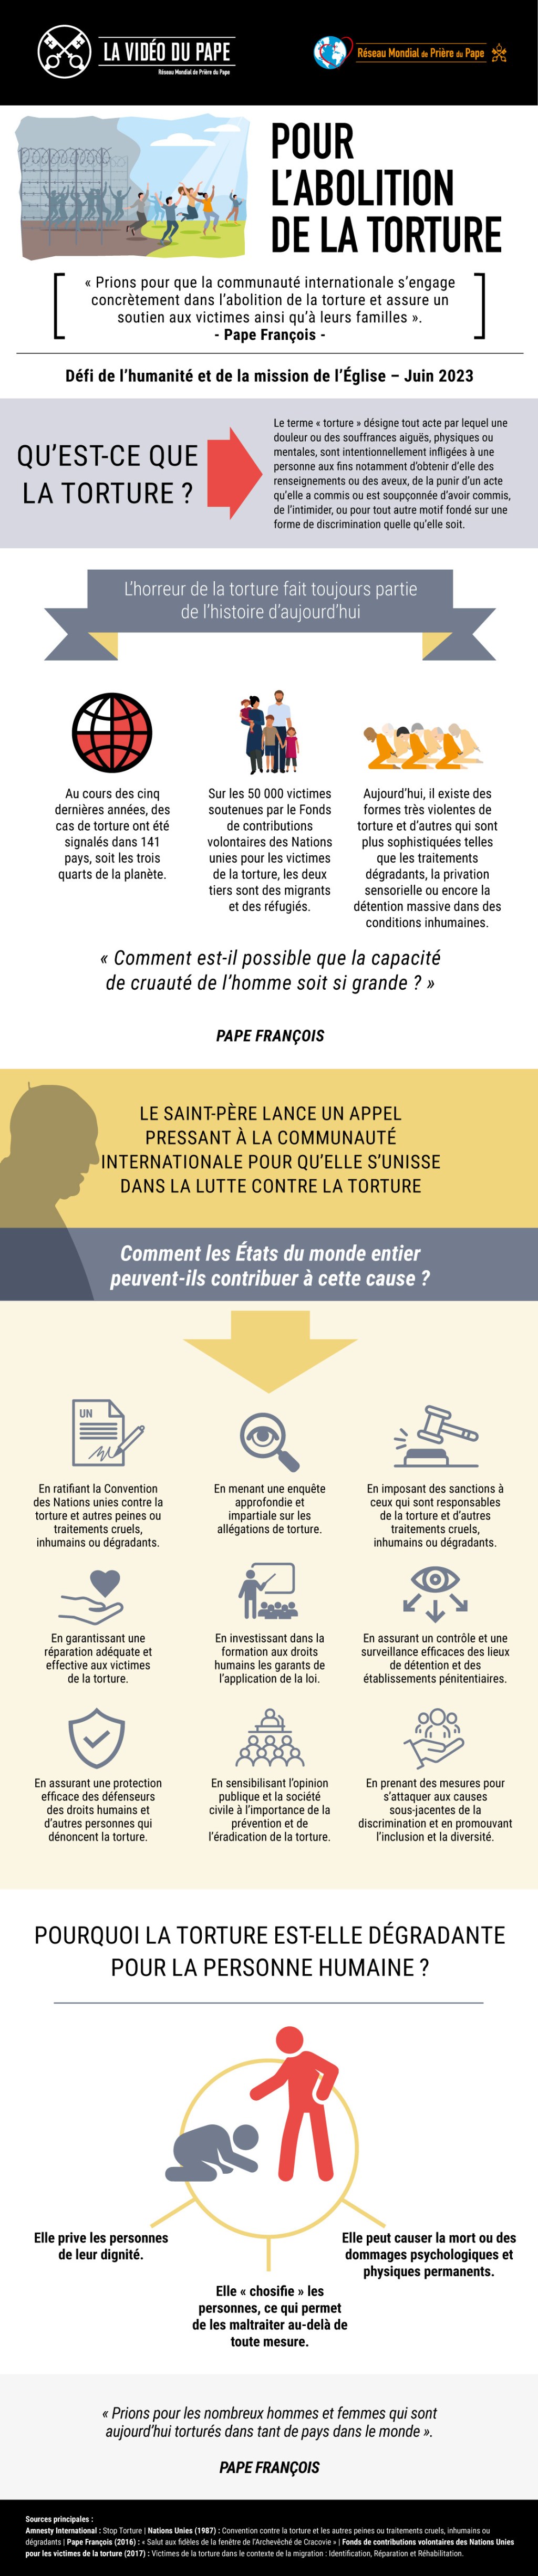 Infographic_-_TPV_6_2023_FR_-_Pour_labolition_de_la_torture.jpg